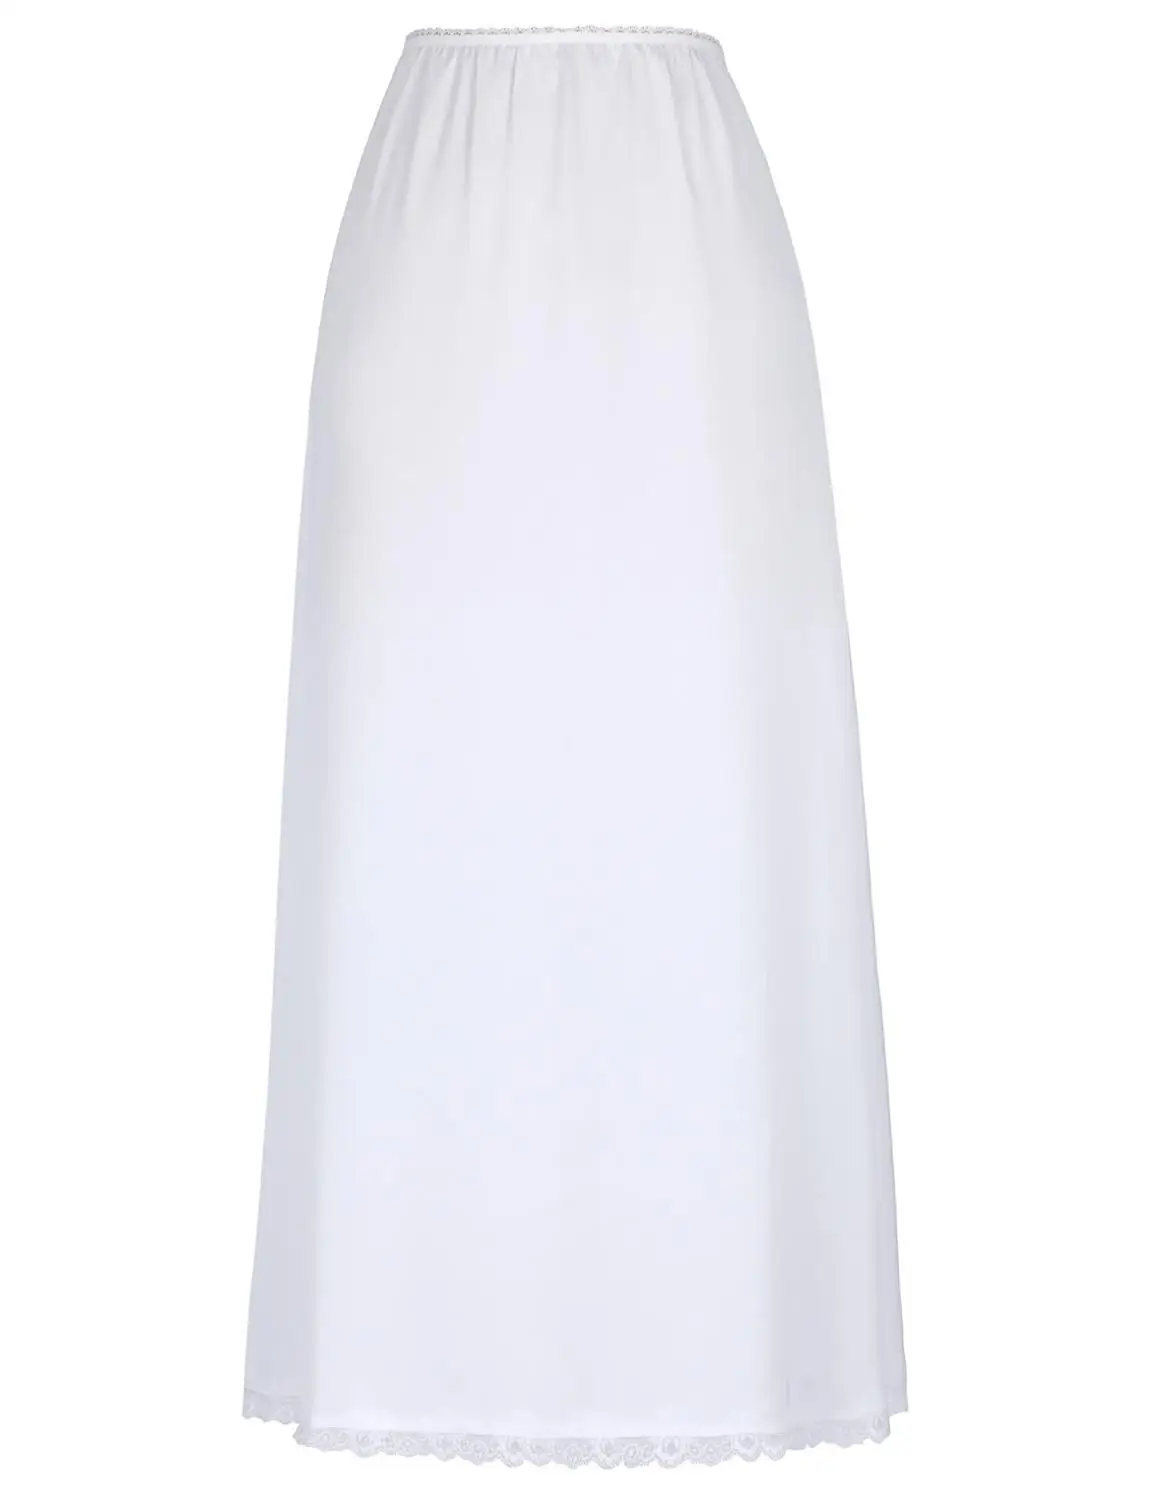 Черная Женская длинная юбка Удобная атласная Талия Слип половина Слип Нижнее белье размера плюс Сексуальная облегающая офисная винтажная юбка - Цвет: white